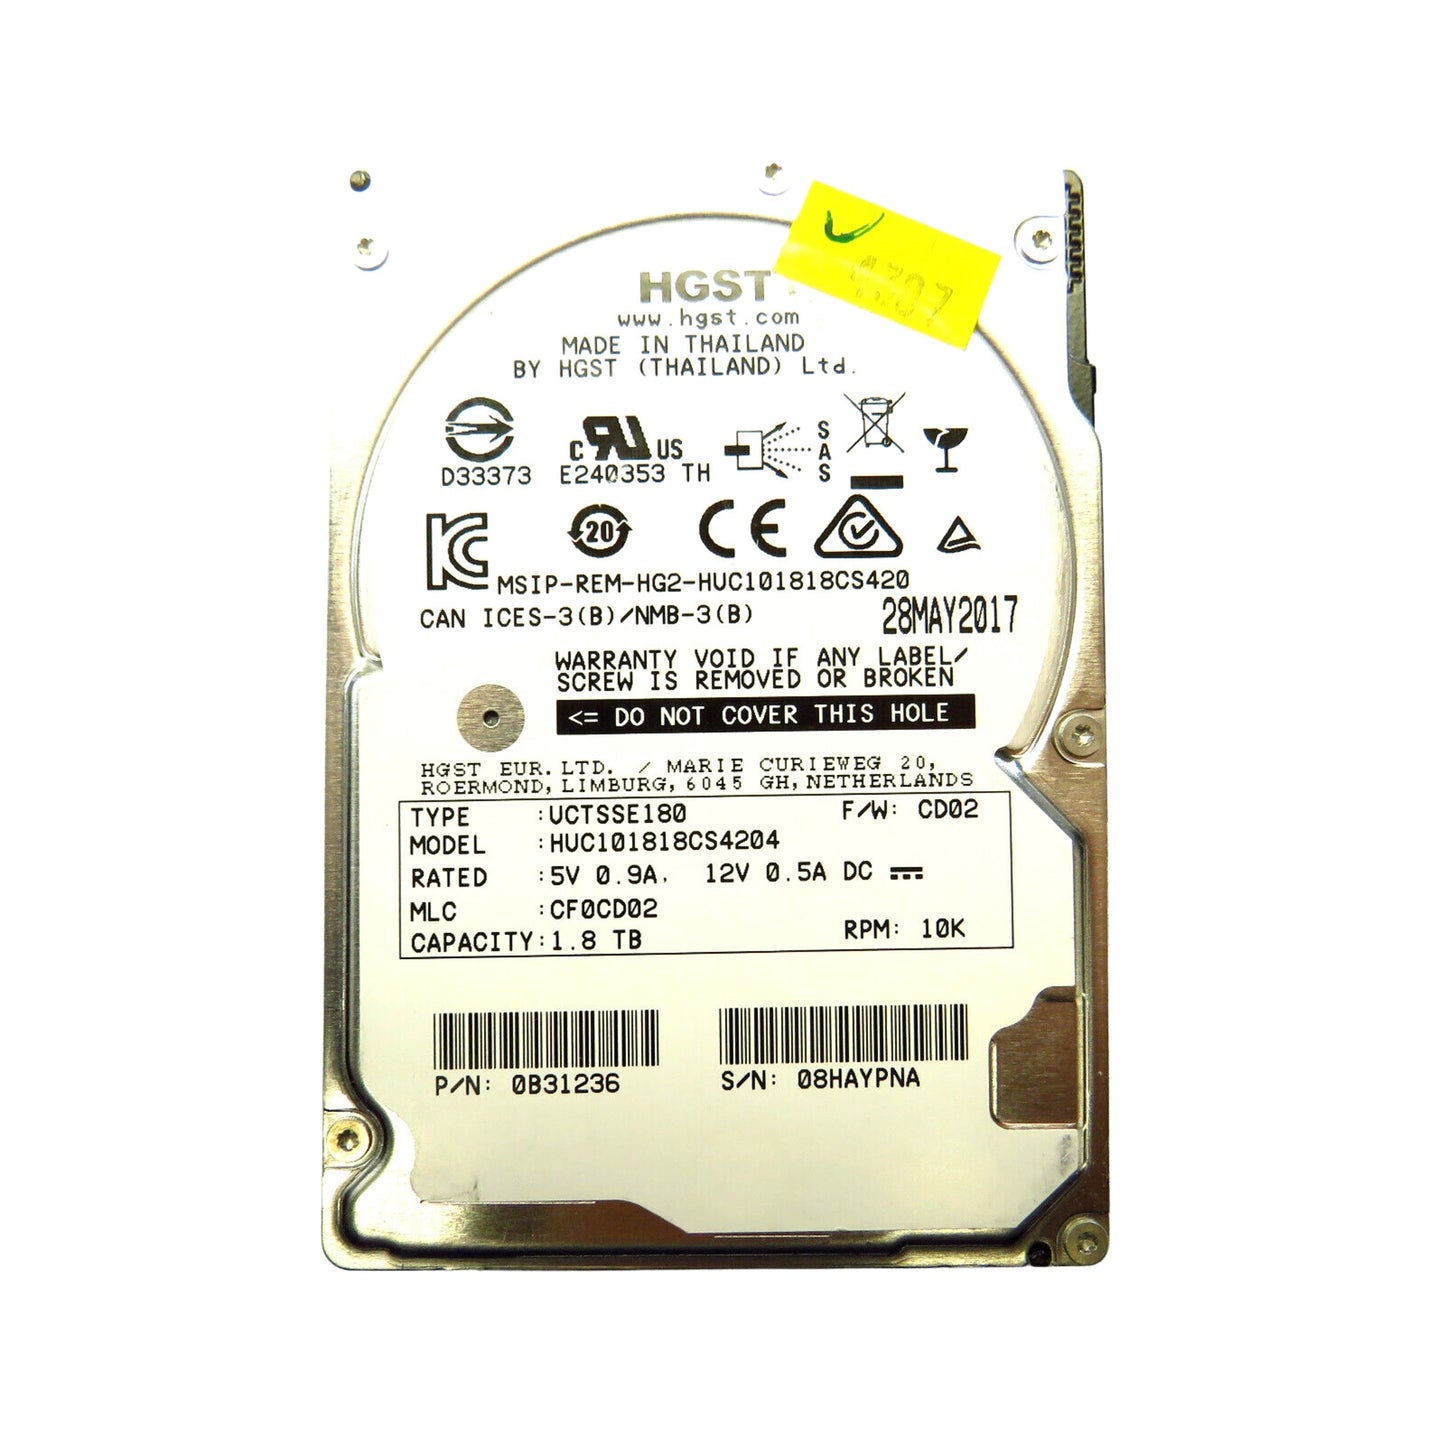 HGST 0B31236 2.5" 1.8TB 10000RPM SAS 12Gb/s Hard Disk Drive (HDD), Silver (Refurbished)